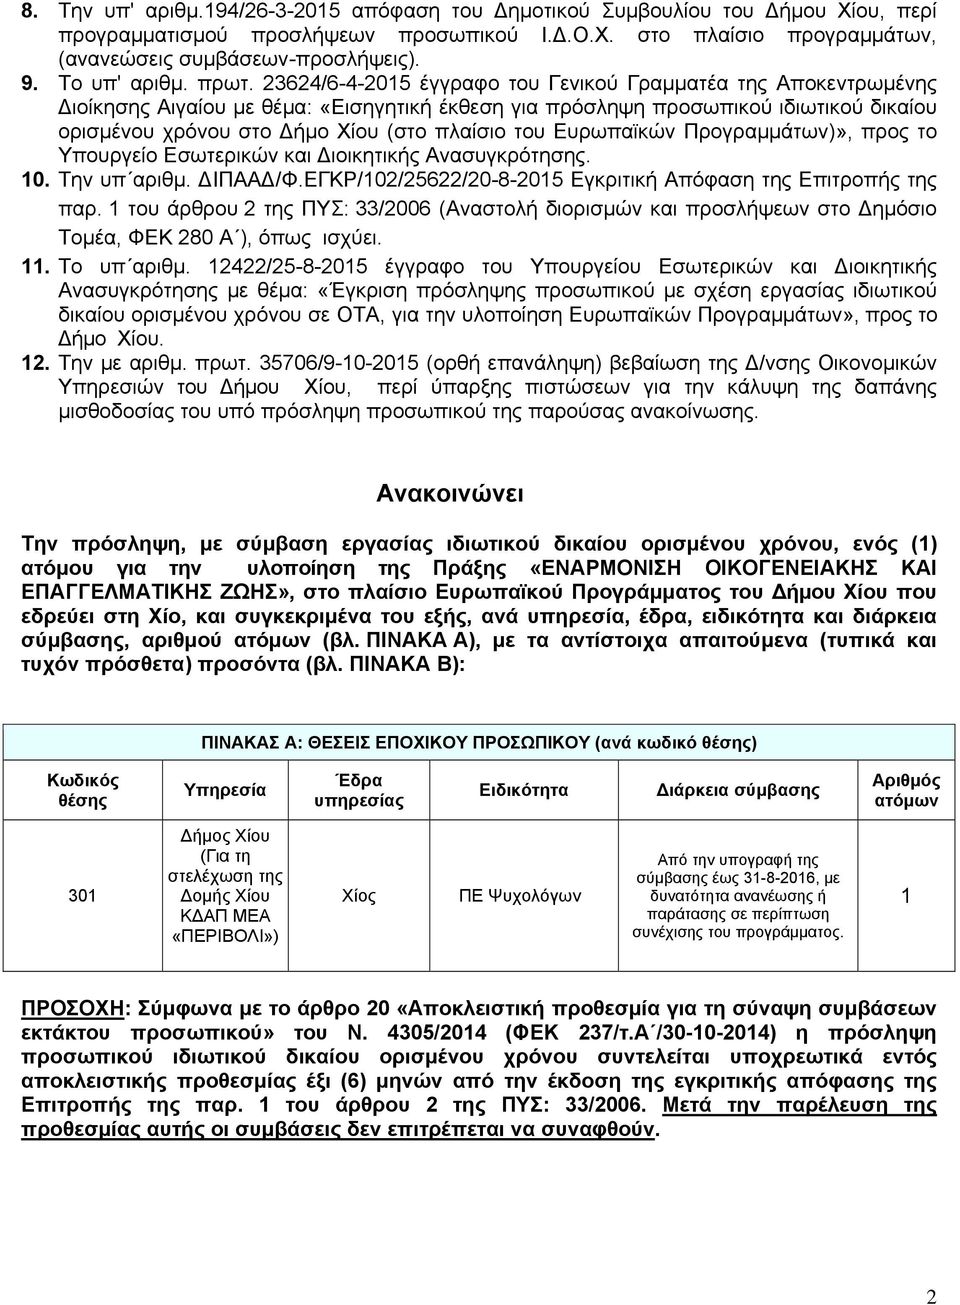 23624/6-4-2015 έγγραφο του Γενικού Γραμματέα της Αποκεντρωμένης Διοίκησης Αιγαίου με θέμα: «Εισηγητική έκθεση για πρόσληψη προσωπικού ιδιωτικού δικαίου ορισμένου χρόνου στο Δήμο Χίου (στο πλαίσιο του